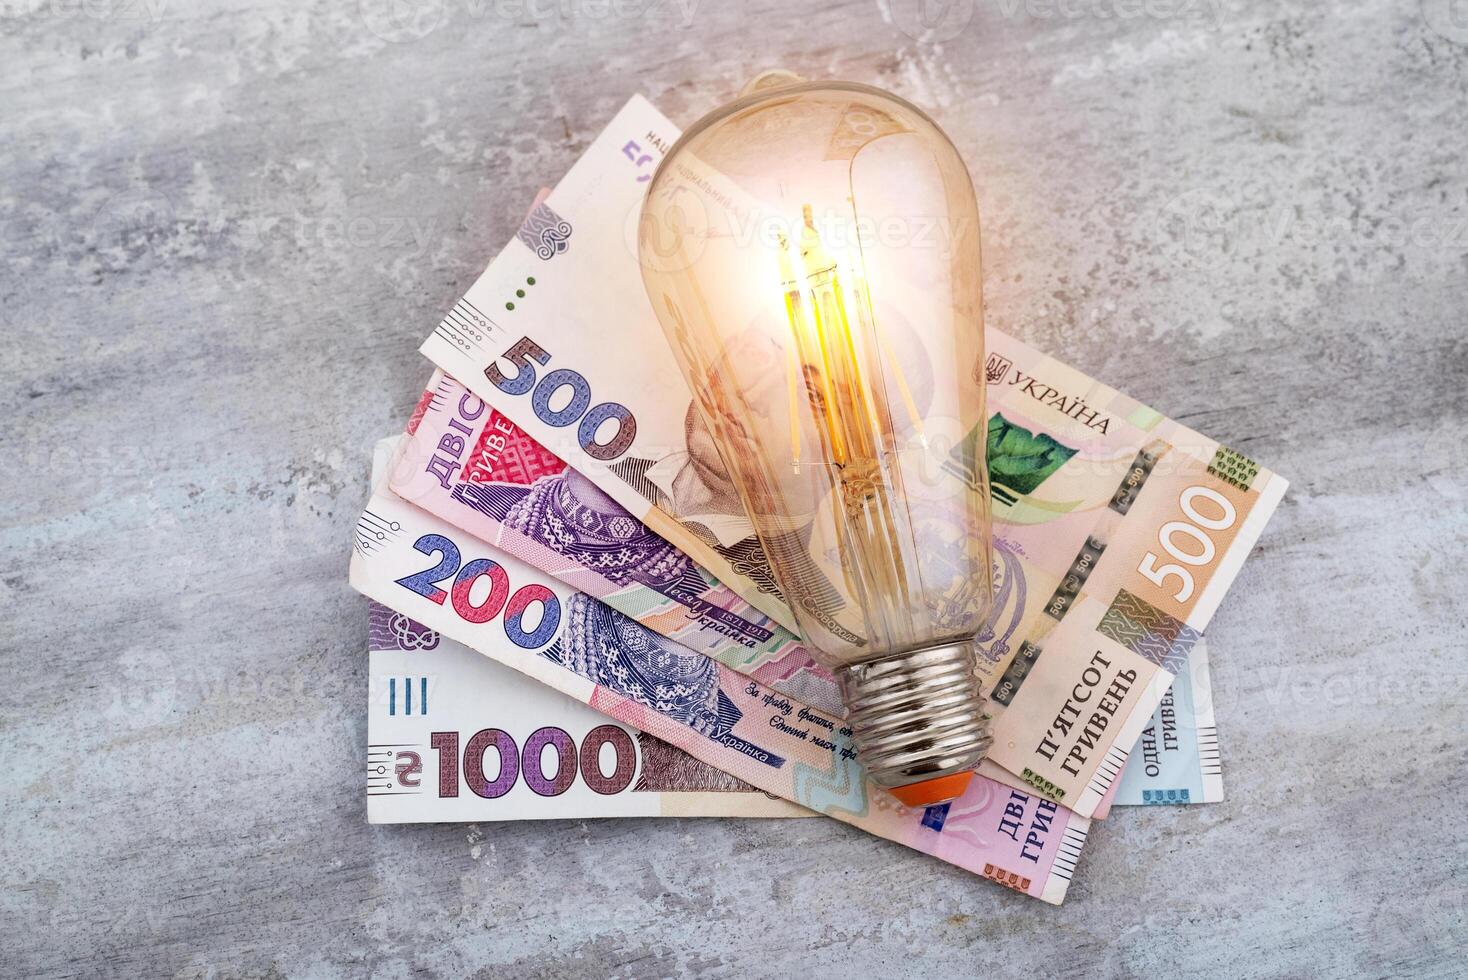 ucraniano dinheiro hryvnias e uma luz lâmpada. a conceito do aumentando eletricidade preços dentro Ucrânia e a déficit. eletricidade custos foto